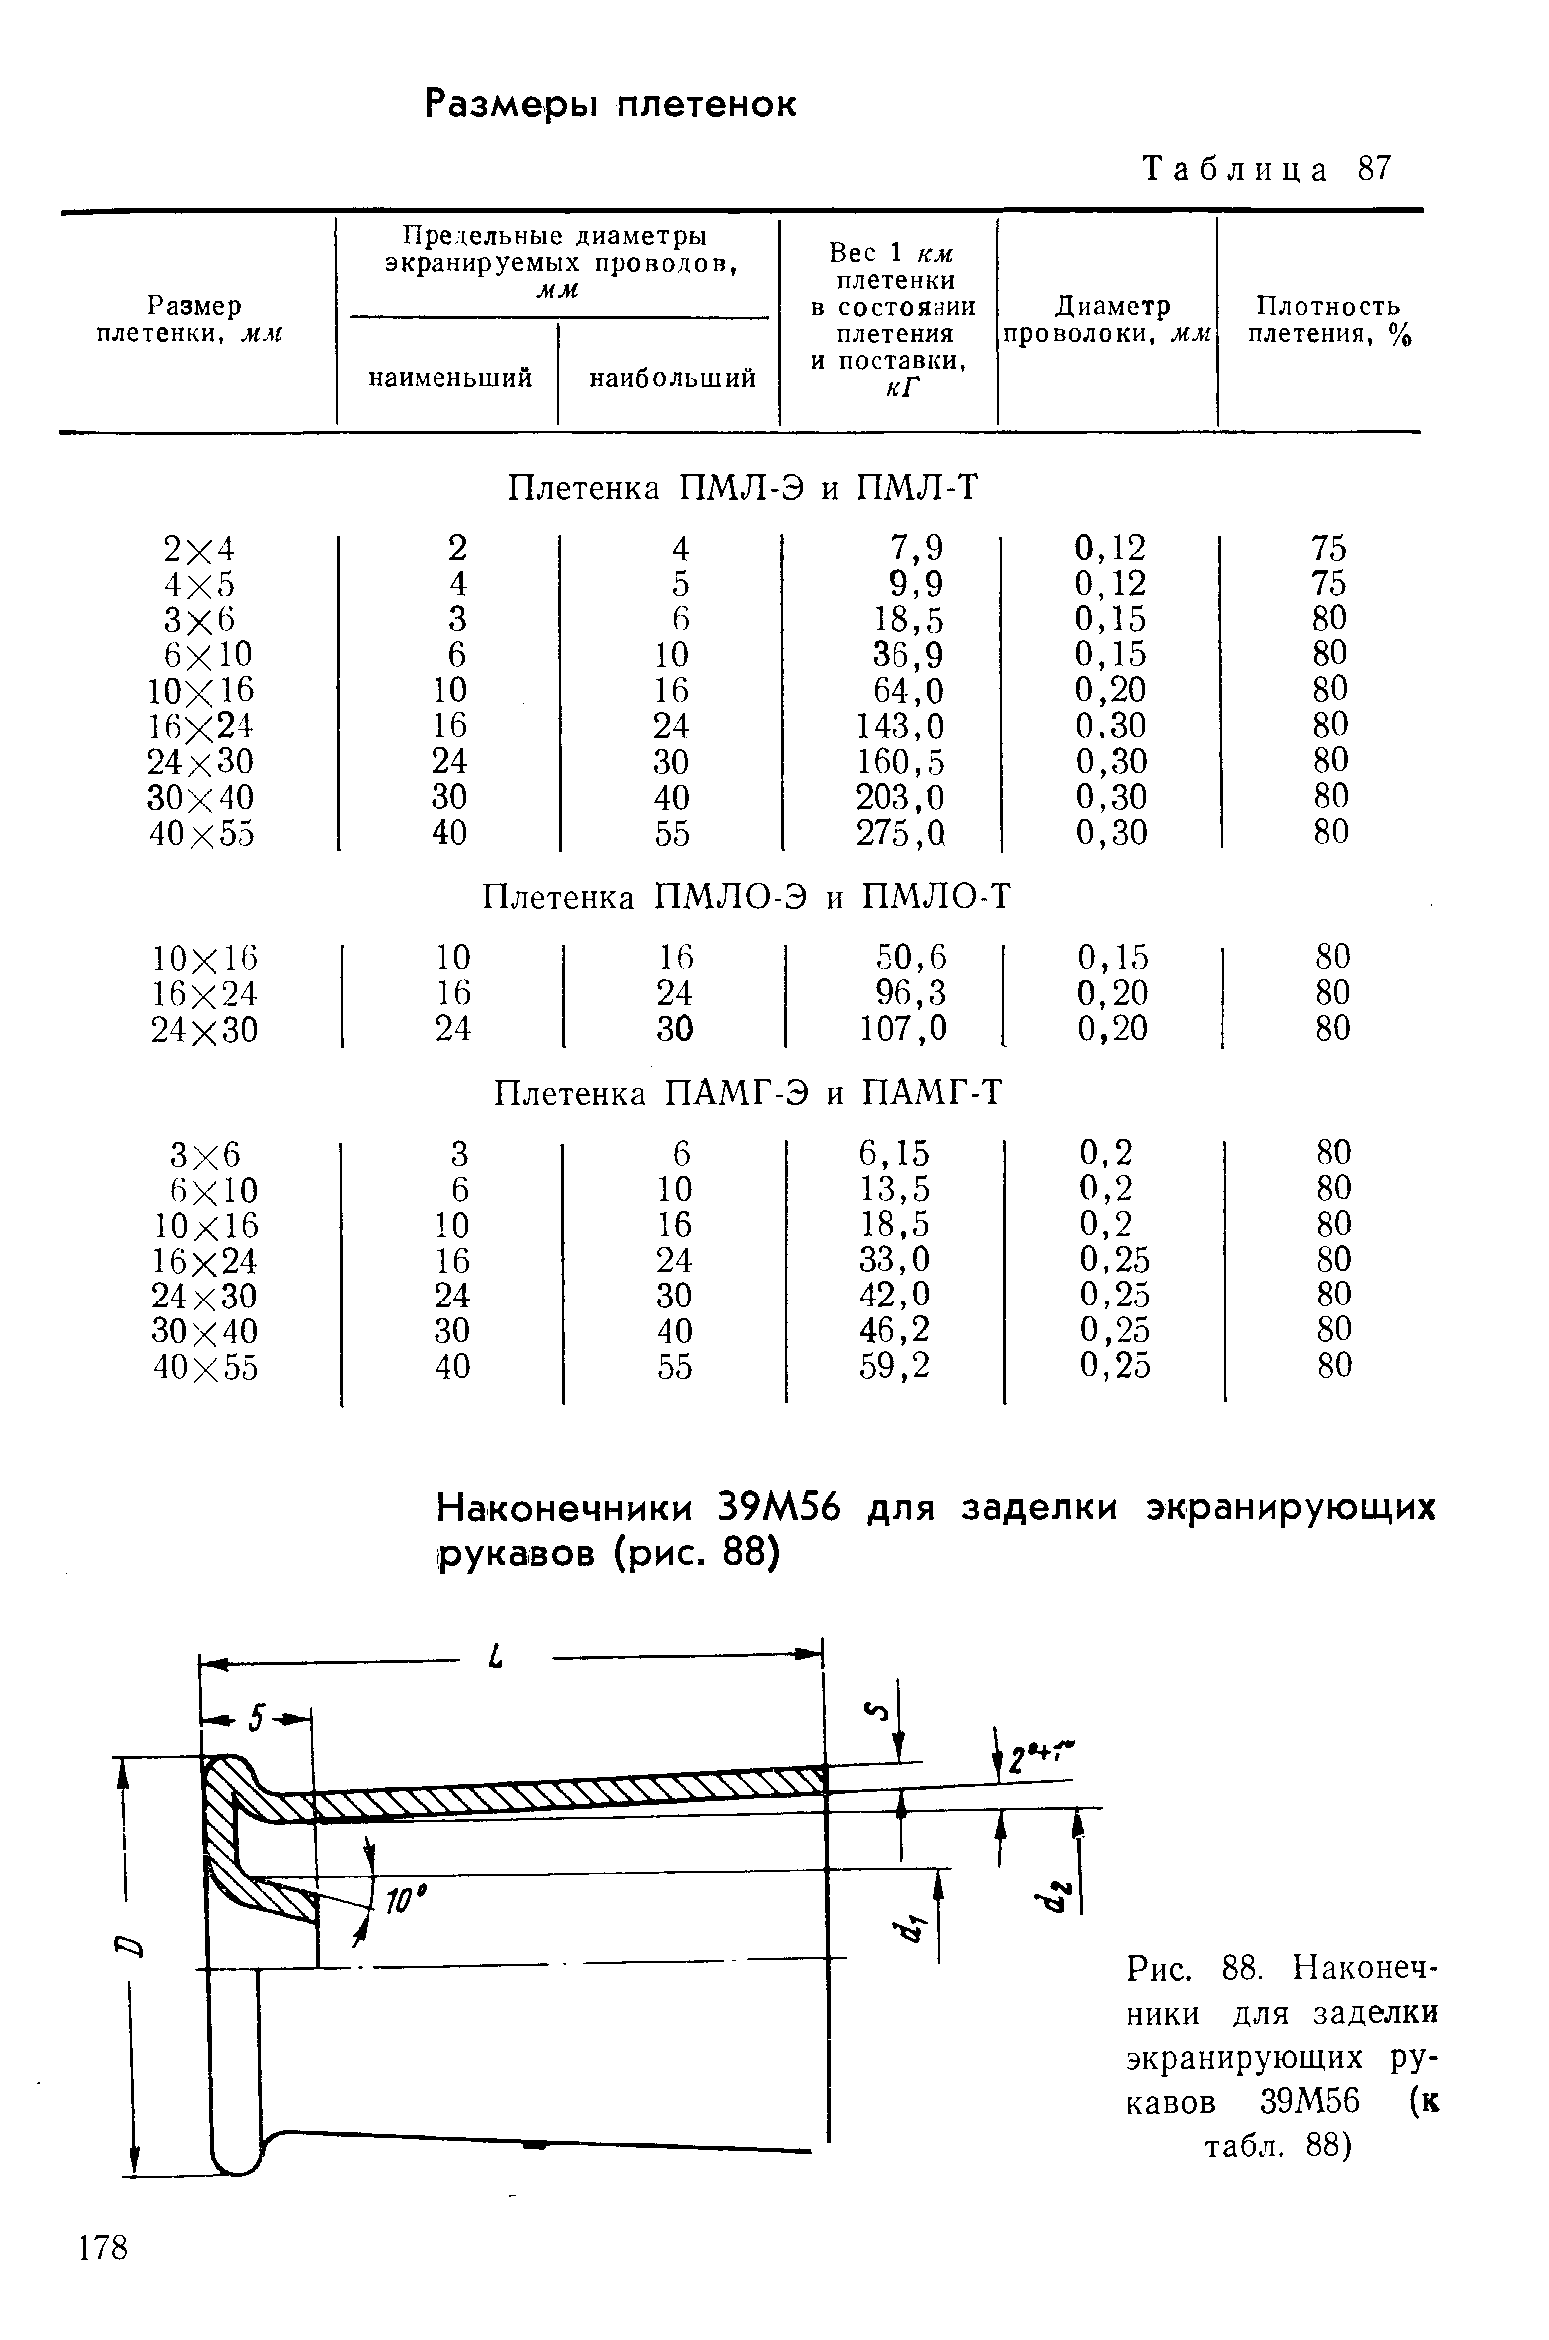 Рис. 88. Наконечники для заделки экранирующих рукавов 39М56 (к табл. 88)
